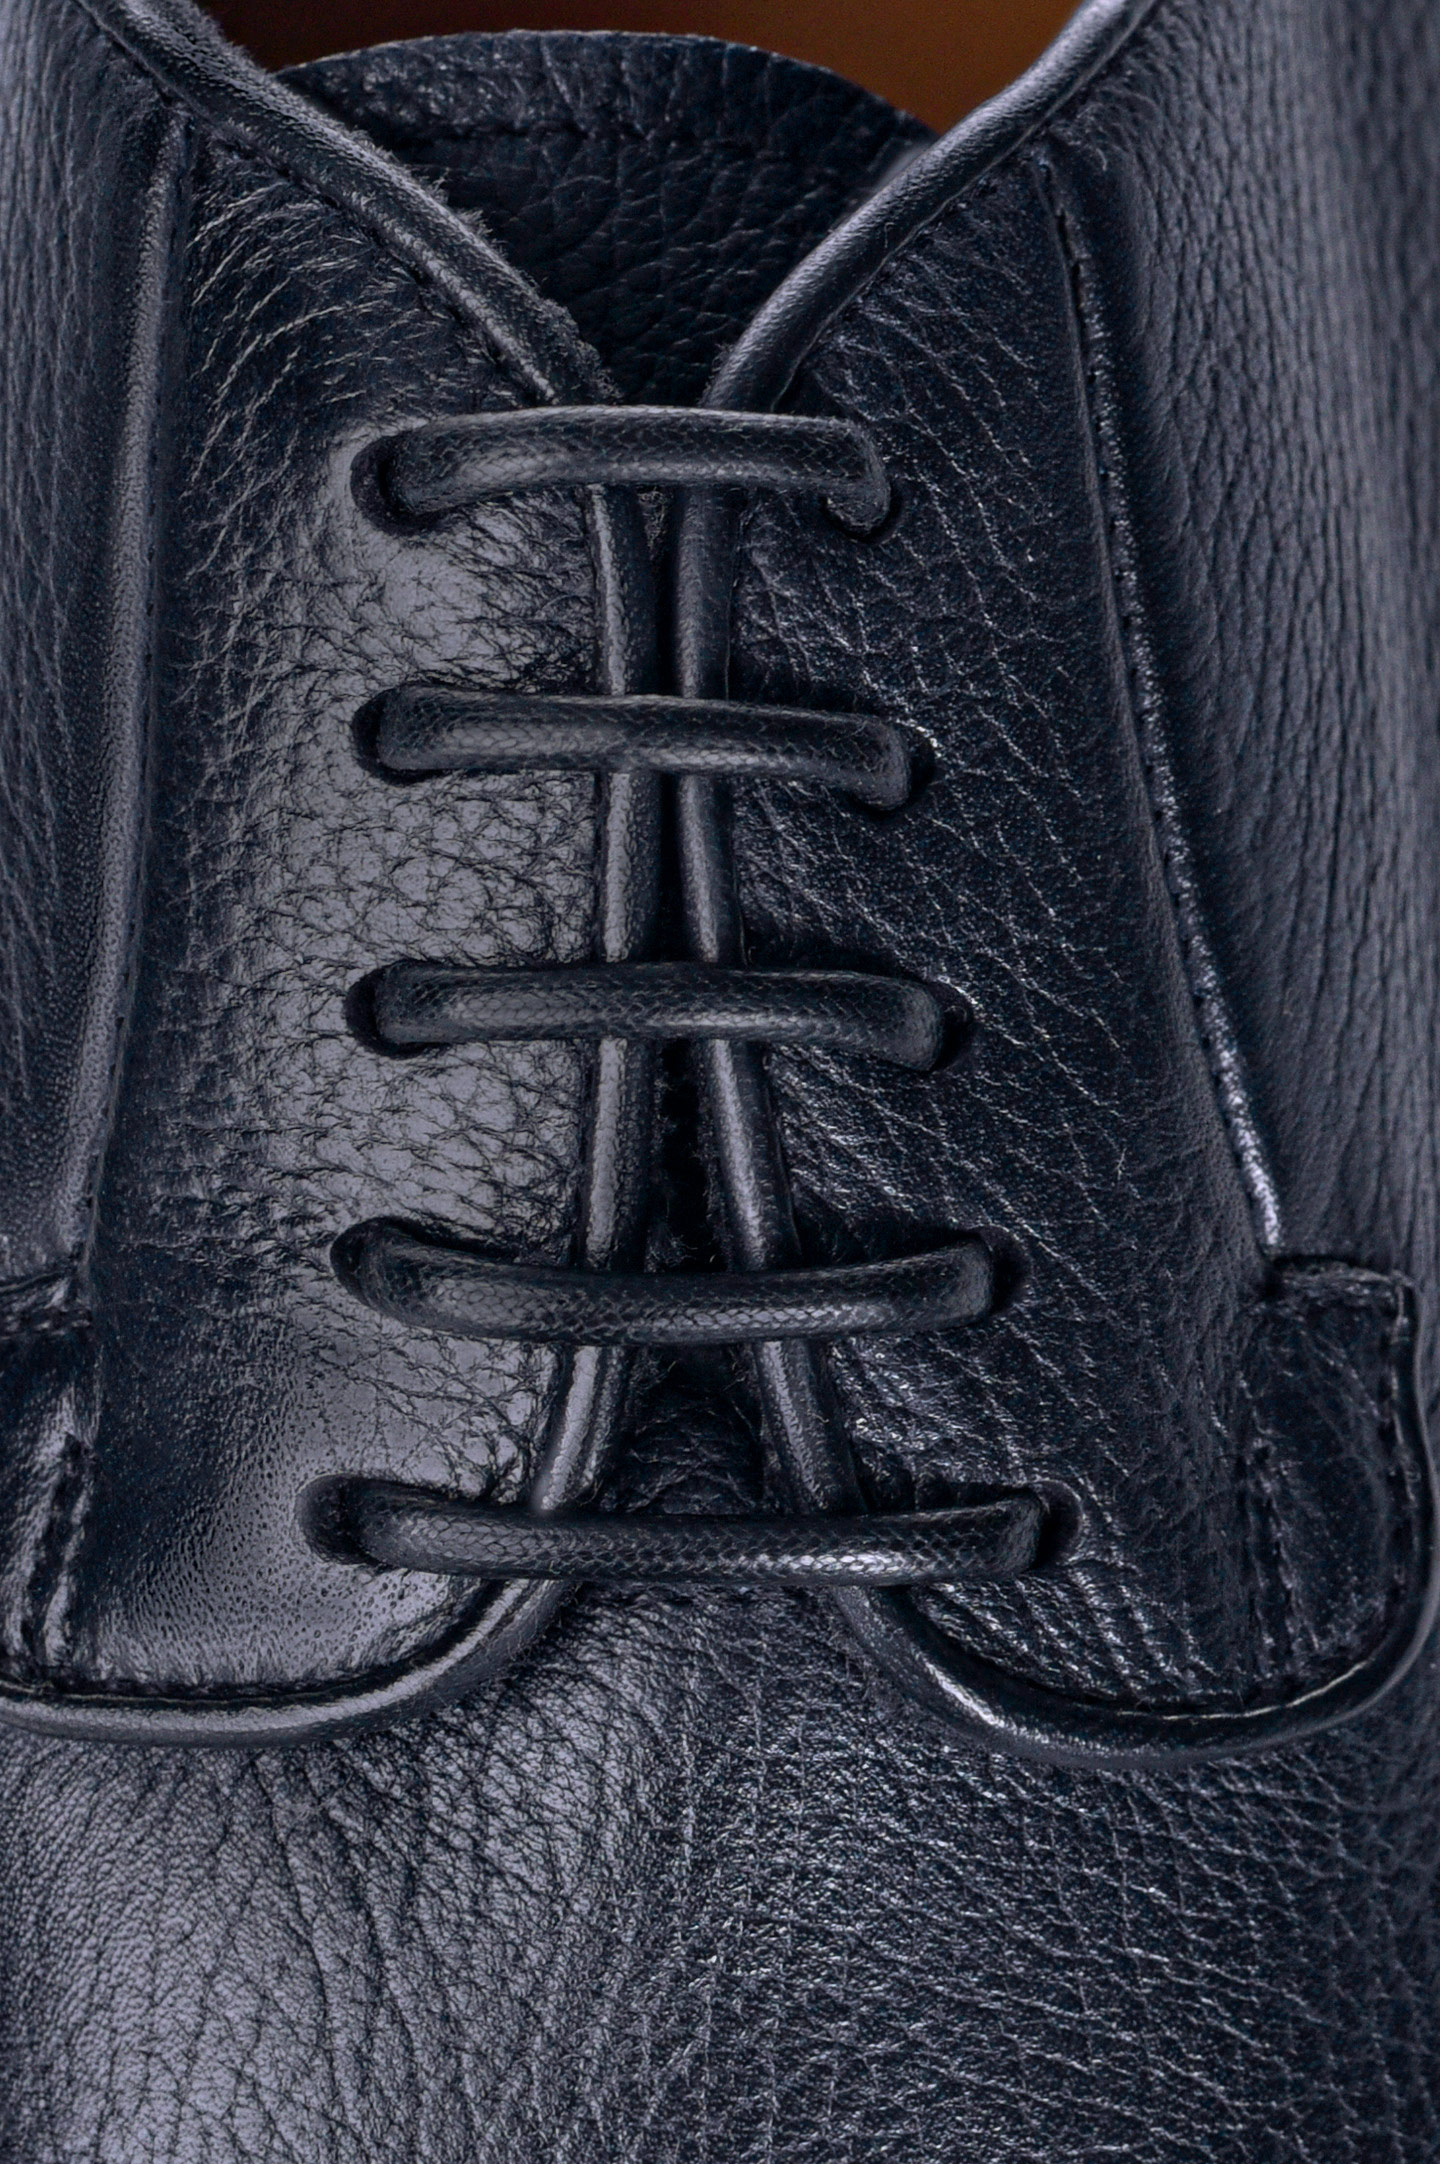 Туфли DOUCAL'S DU1330DAKOUT019, цвет: Синий, Мужской